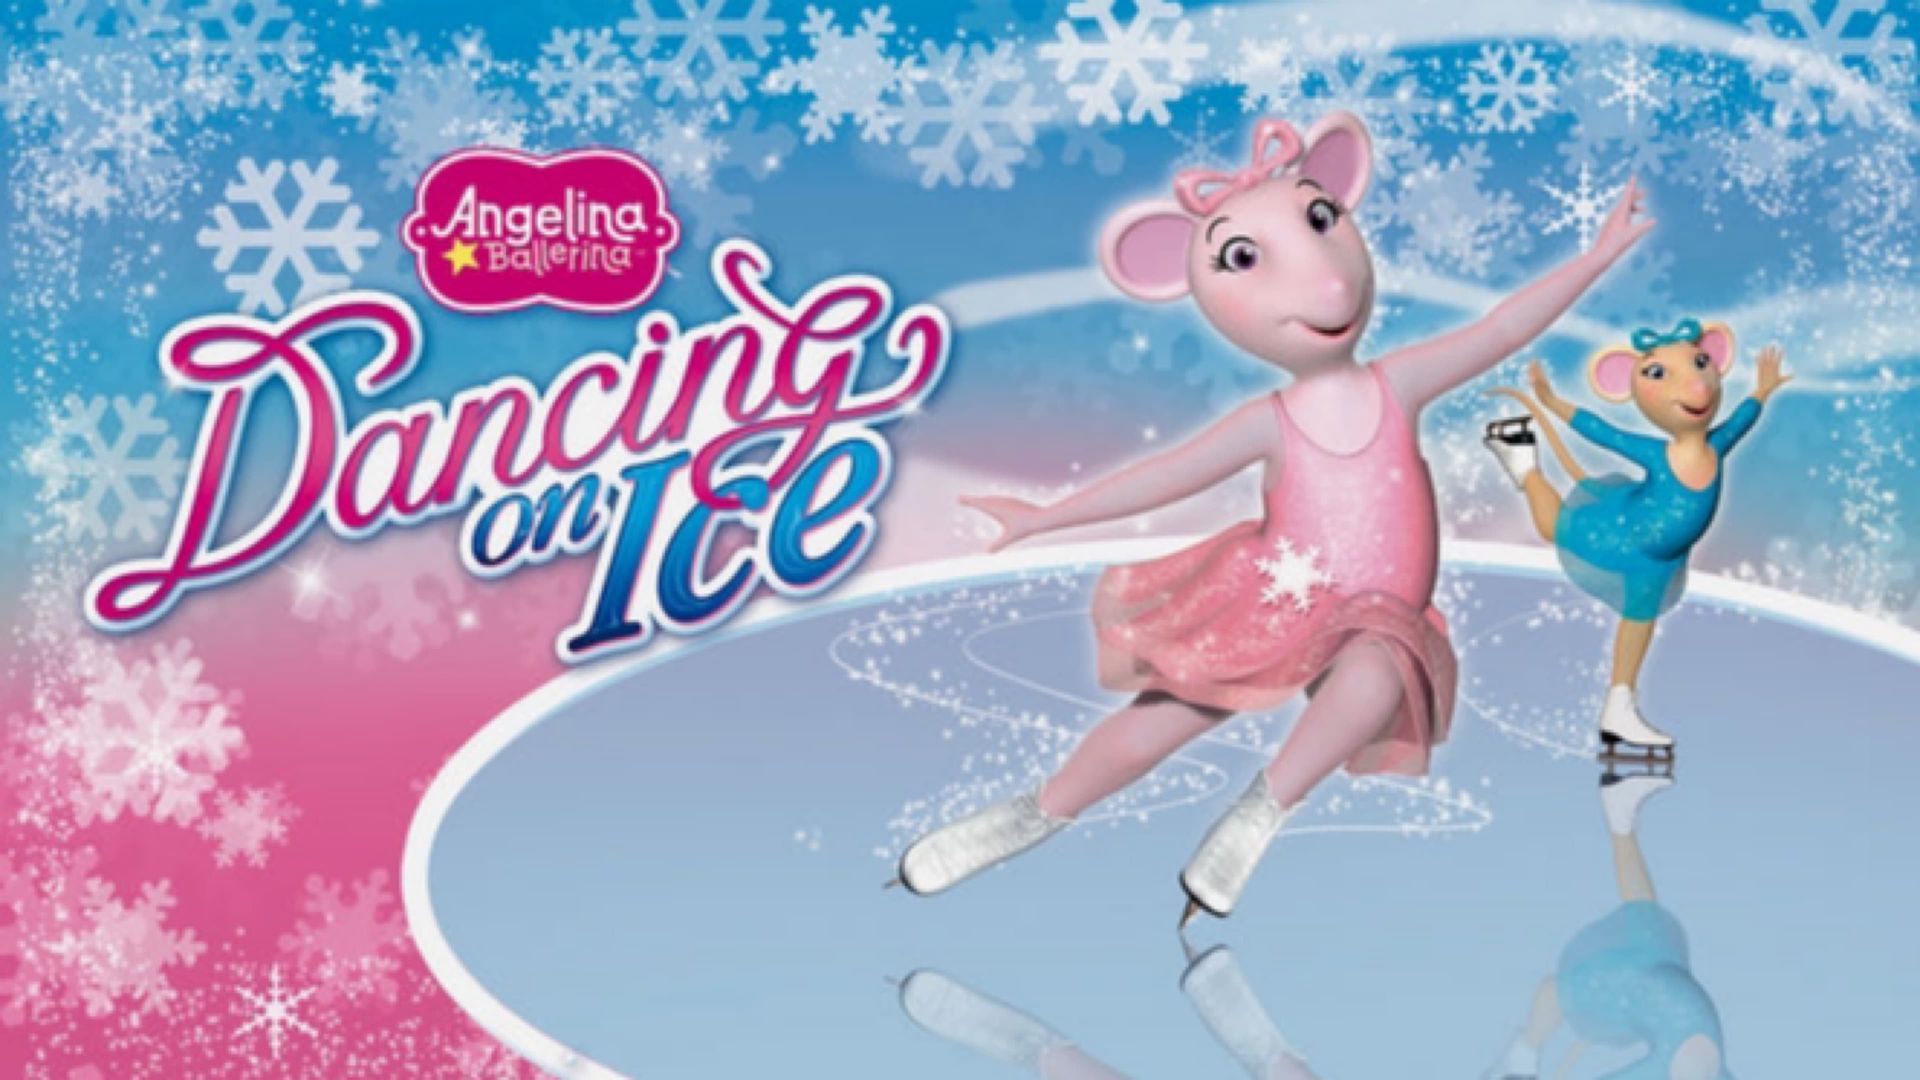 Angelina Ballerina: Dancing on Ice background